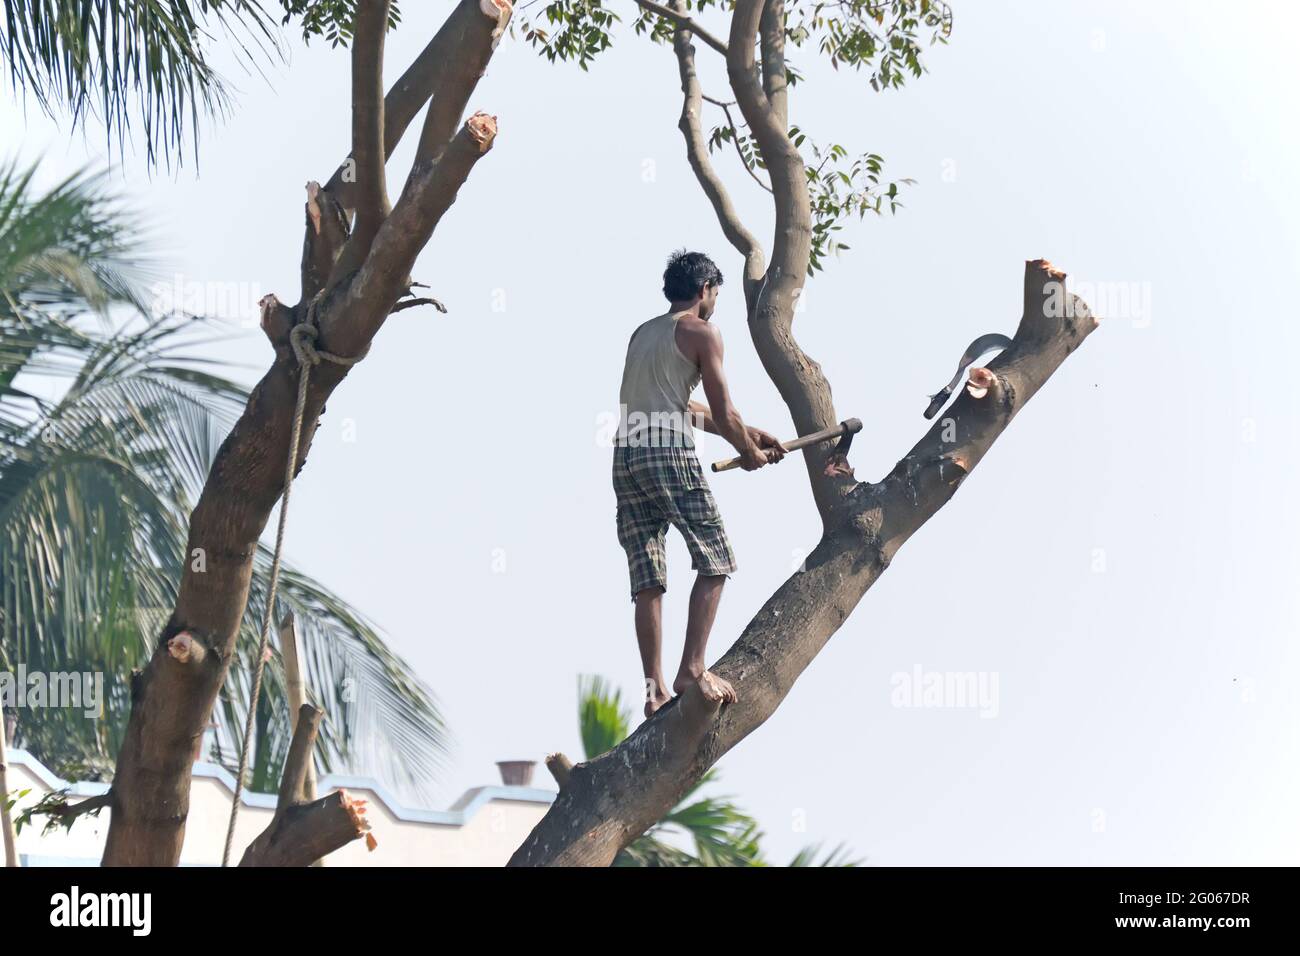 KOLKATA, BENGALA OCCIDENTALE / INDIA - GENNAIO 29th : albero da taglio uomo non identificato per rendere disponibile lo spazio per la crescita urbana. L’India sta crescendo. Foto Stock